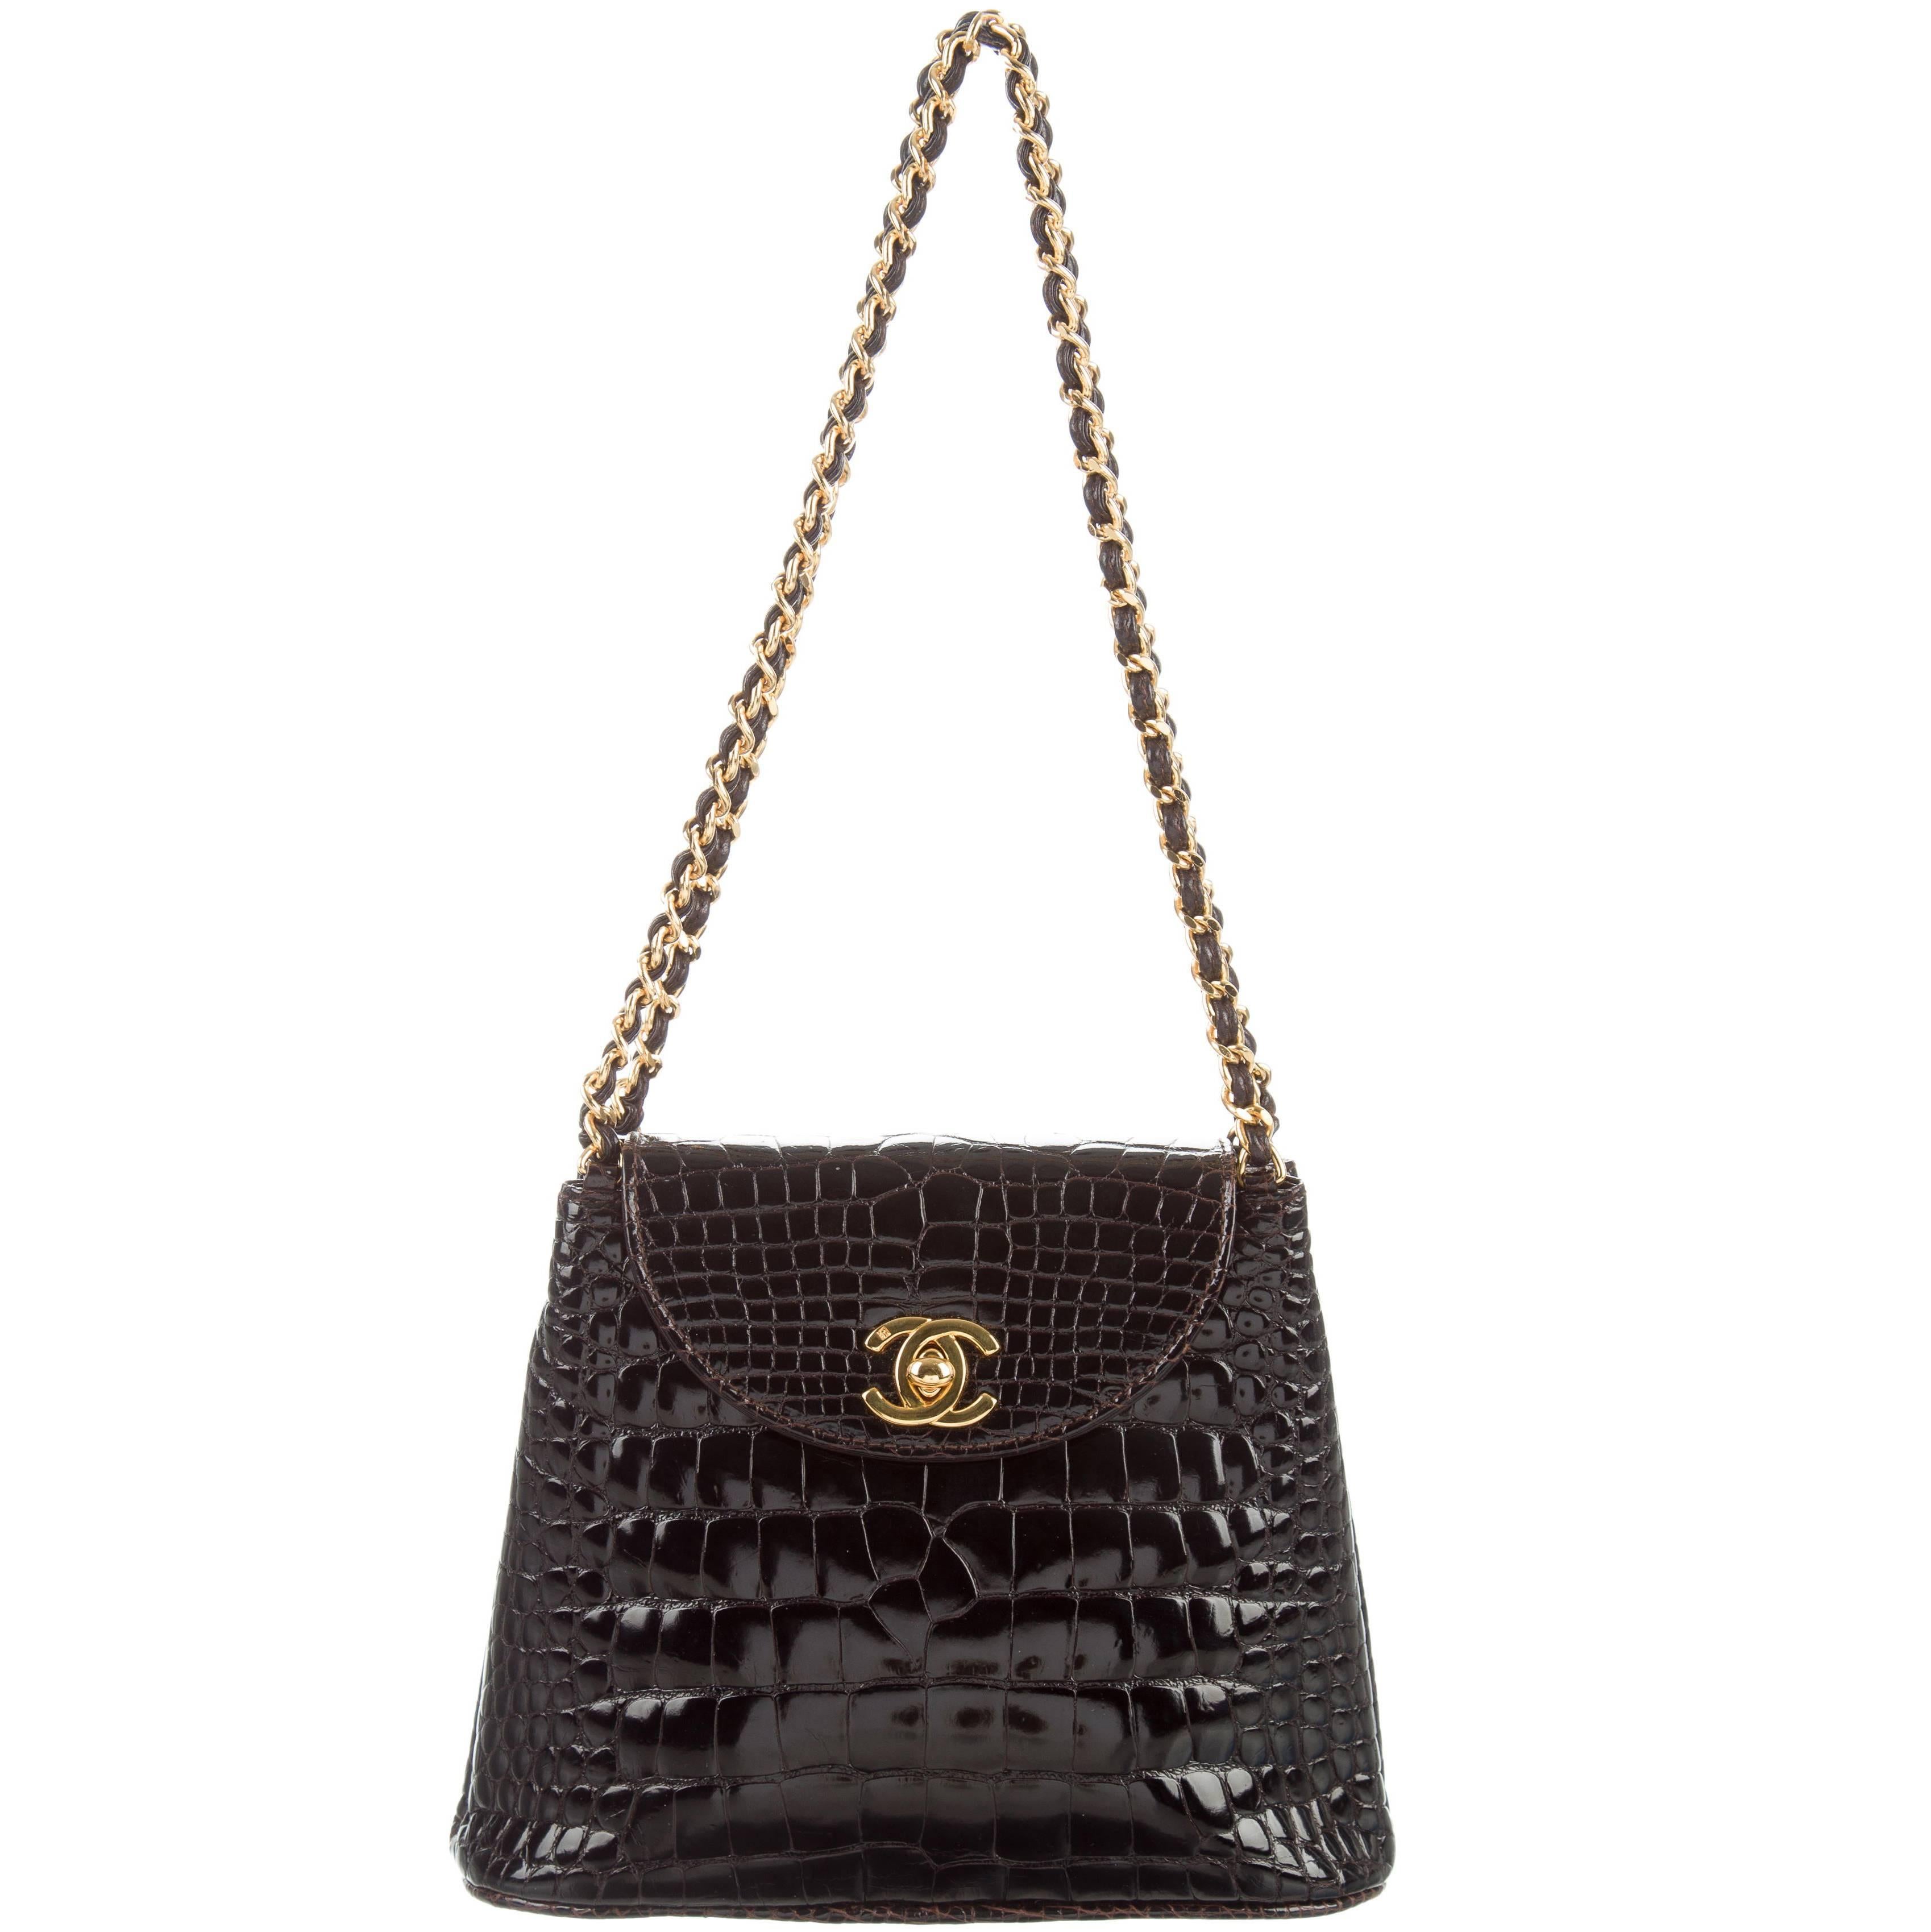 Chanel Dark Chocolate Crocodile CC Clutch Evening Satchel Flap Bag W/Accessories